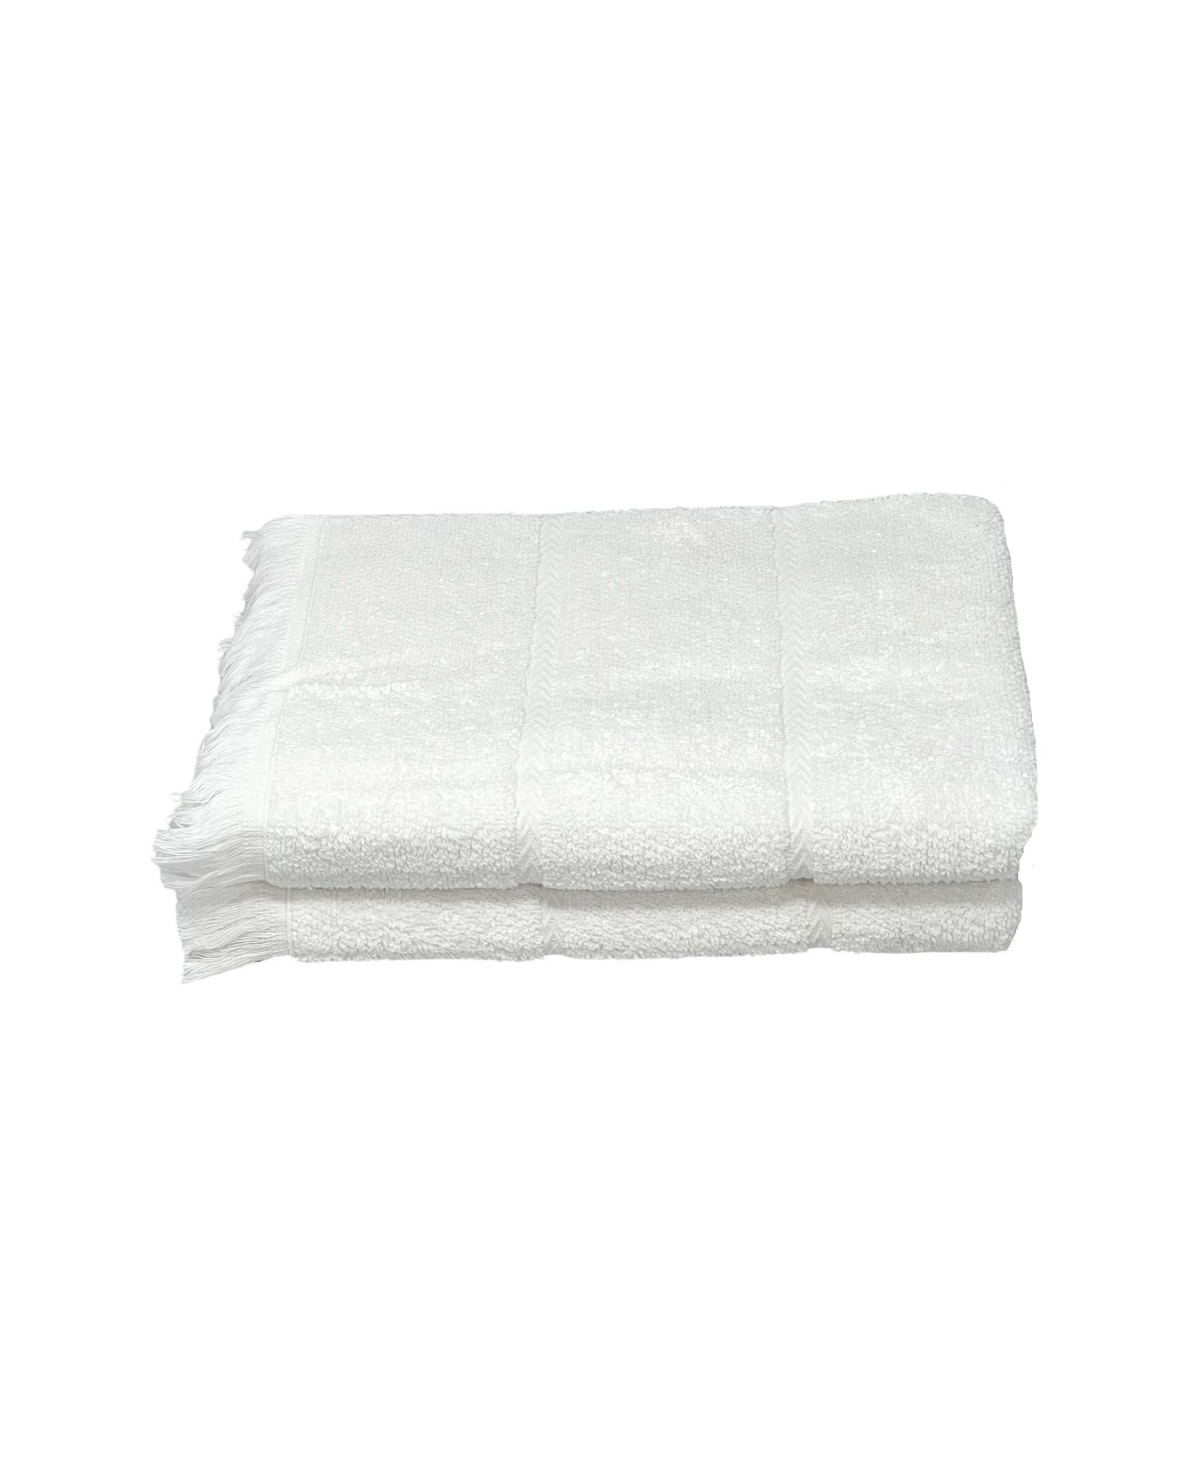 Ozan Premium Home Mirage Collection 2 Piece Turkish Cotton Luxury Hand Towel Set Bedding In White